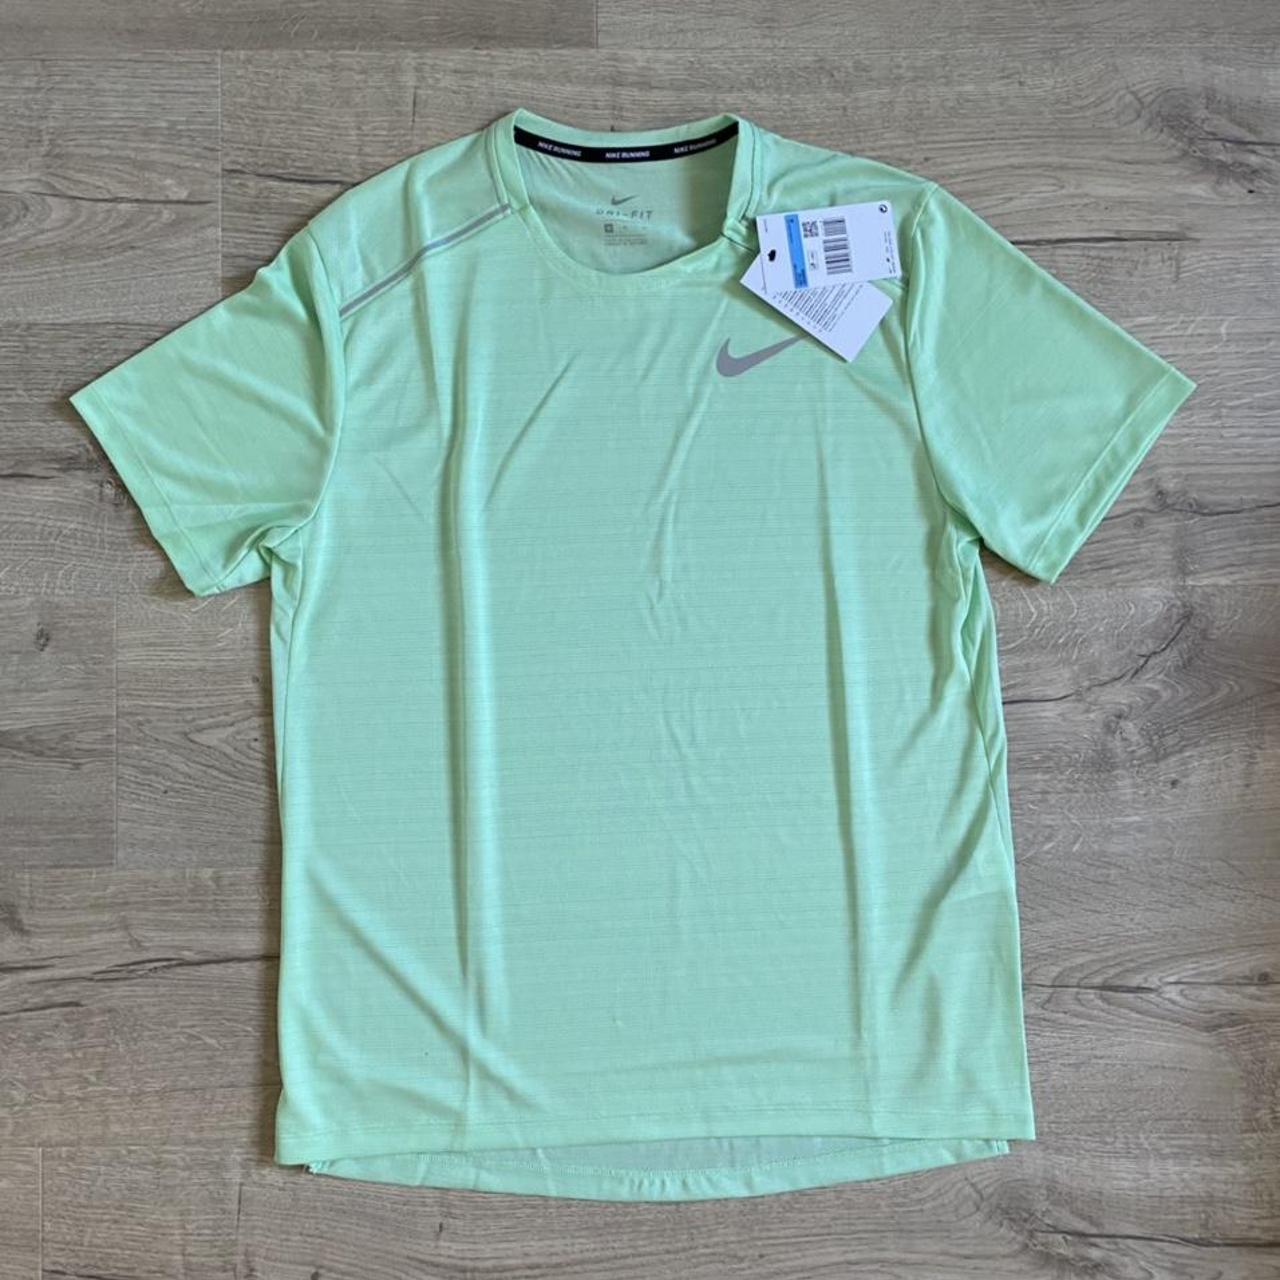 Nike Men's Green T-shirt (2)